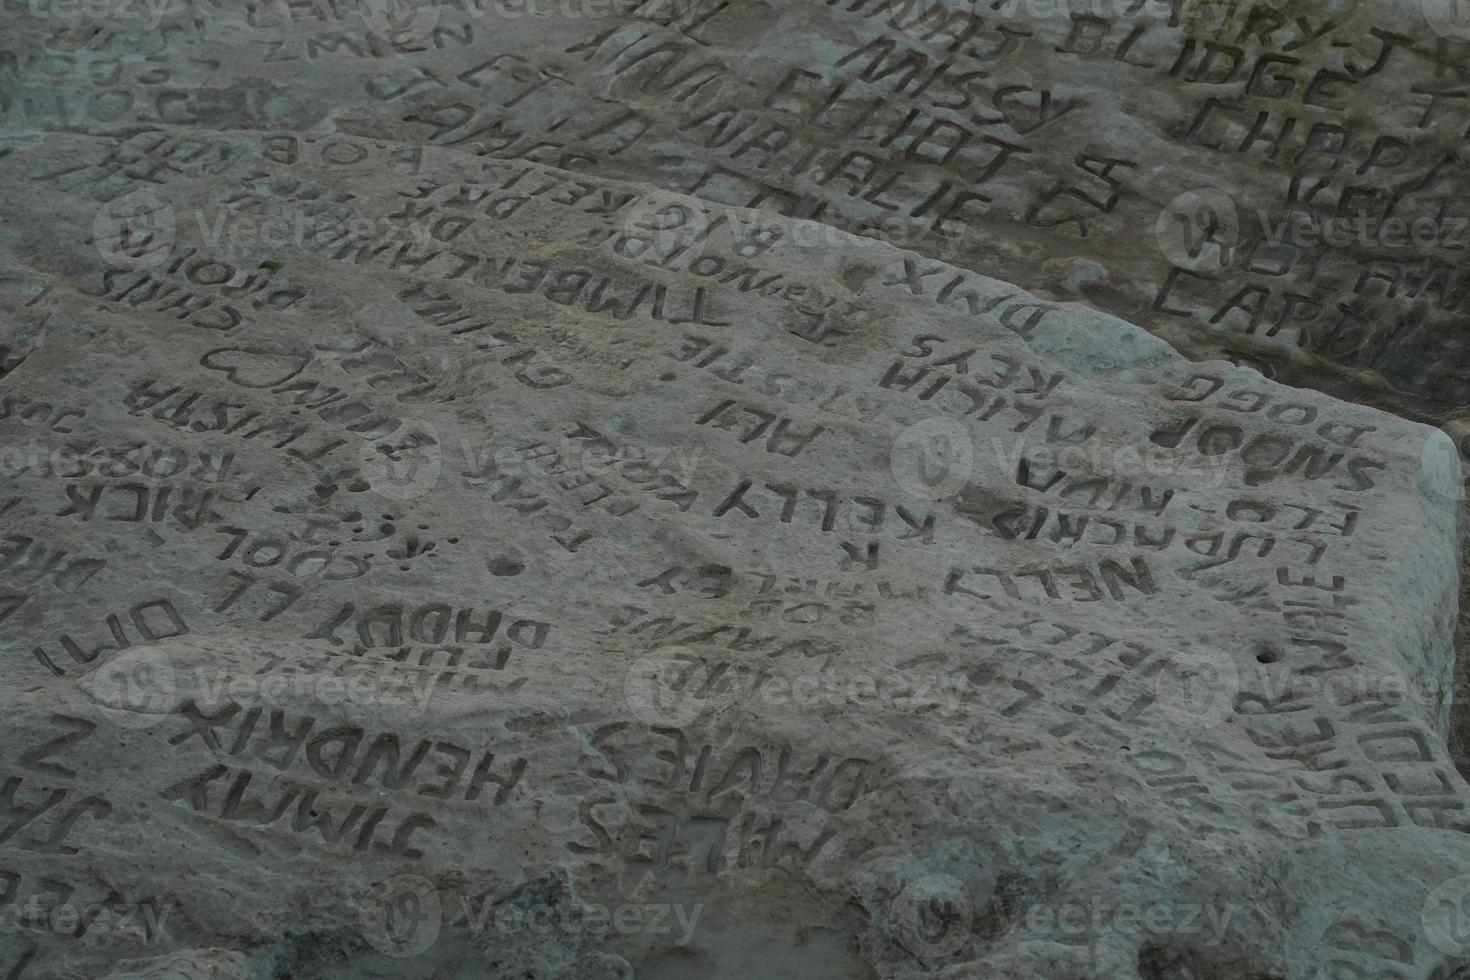 Noms de célébrités célébrités graffiti sur saint peter piscines malte rock formation photo